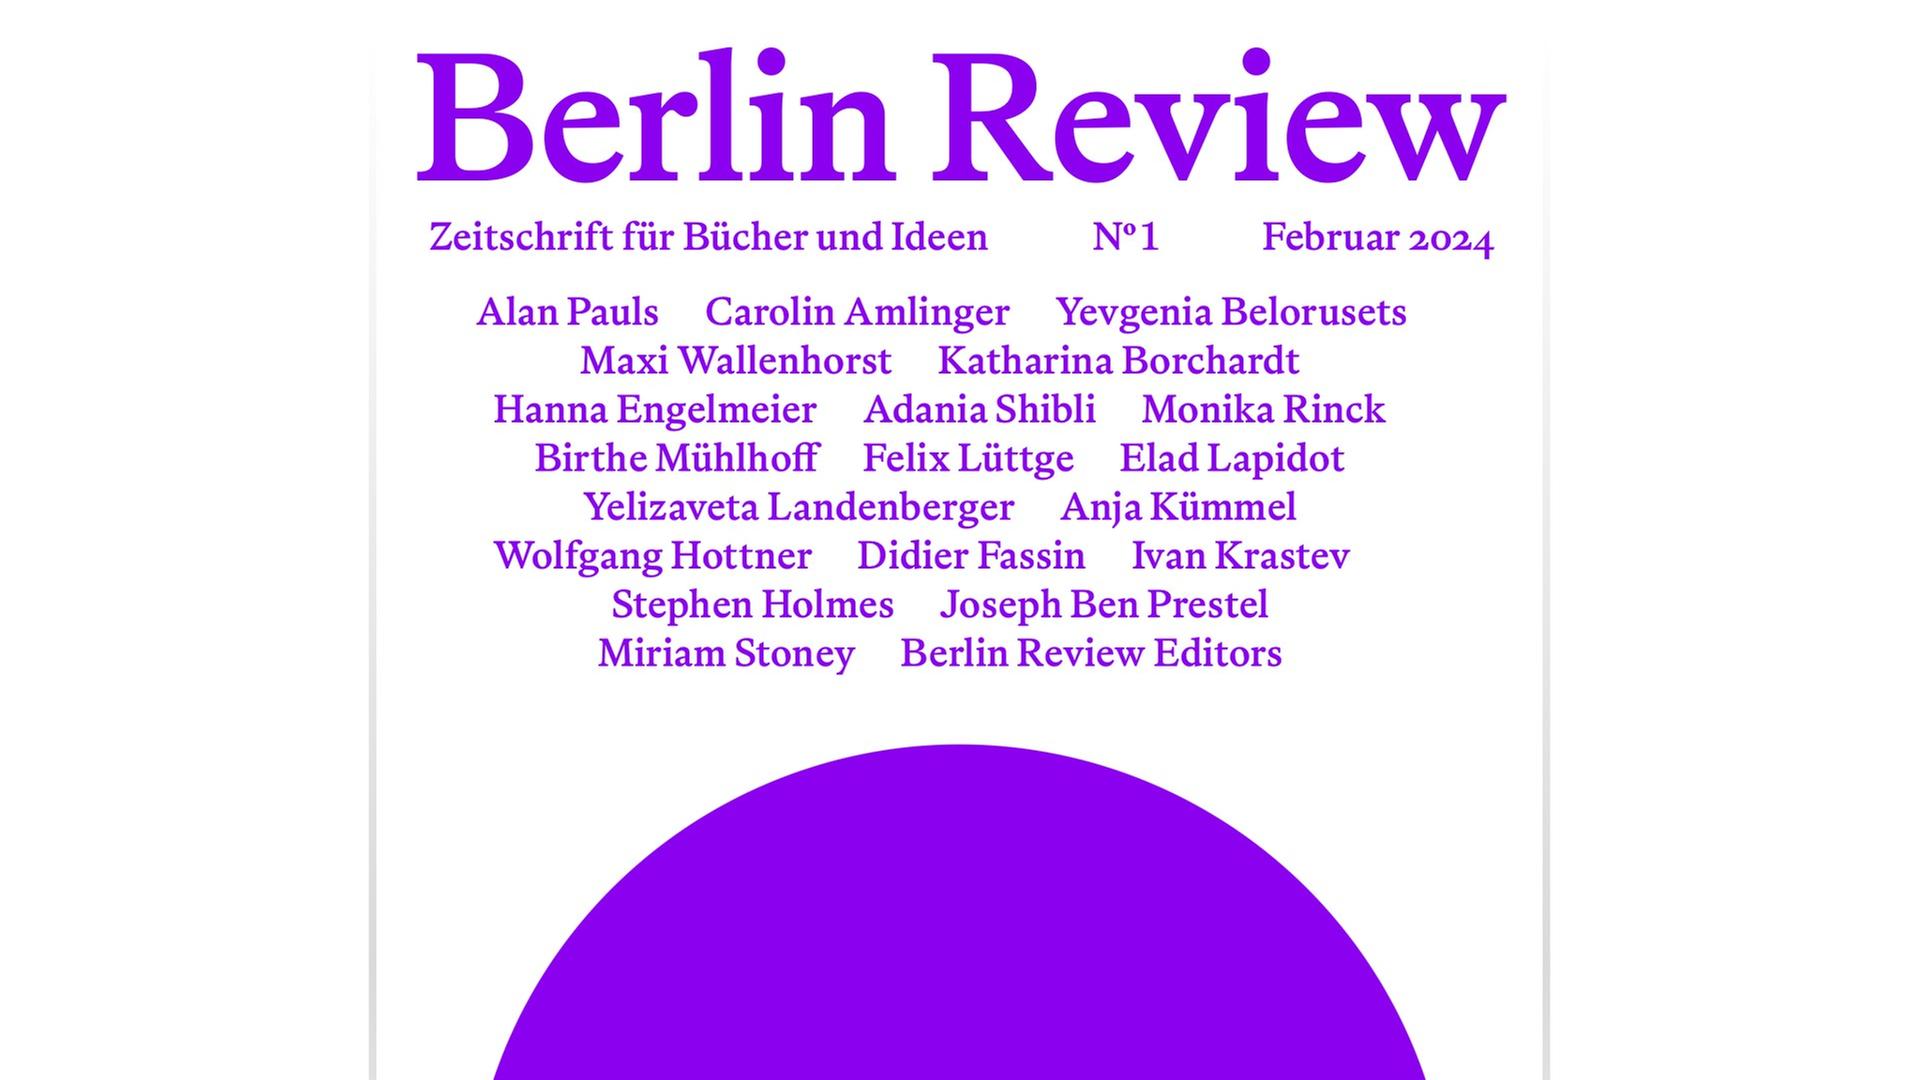 Das Cover der Zeitschrift "Berlin Review" zeigt unter dem Titel die Namen der Autorinnen und Autoren und einen violetten Kreis.